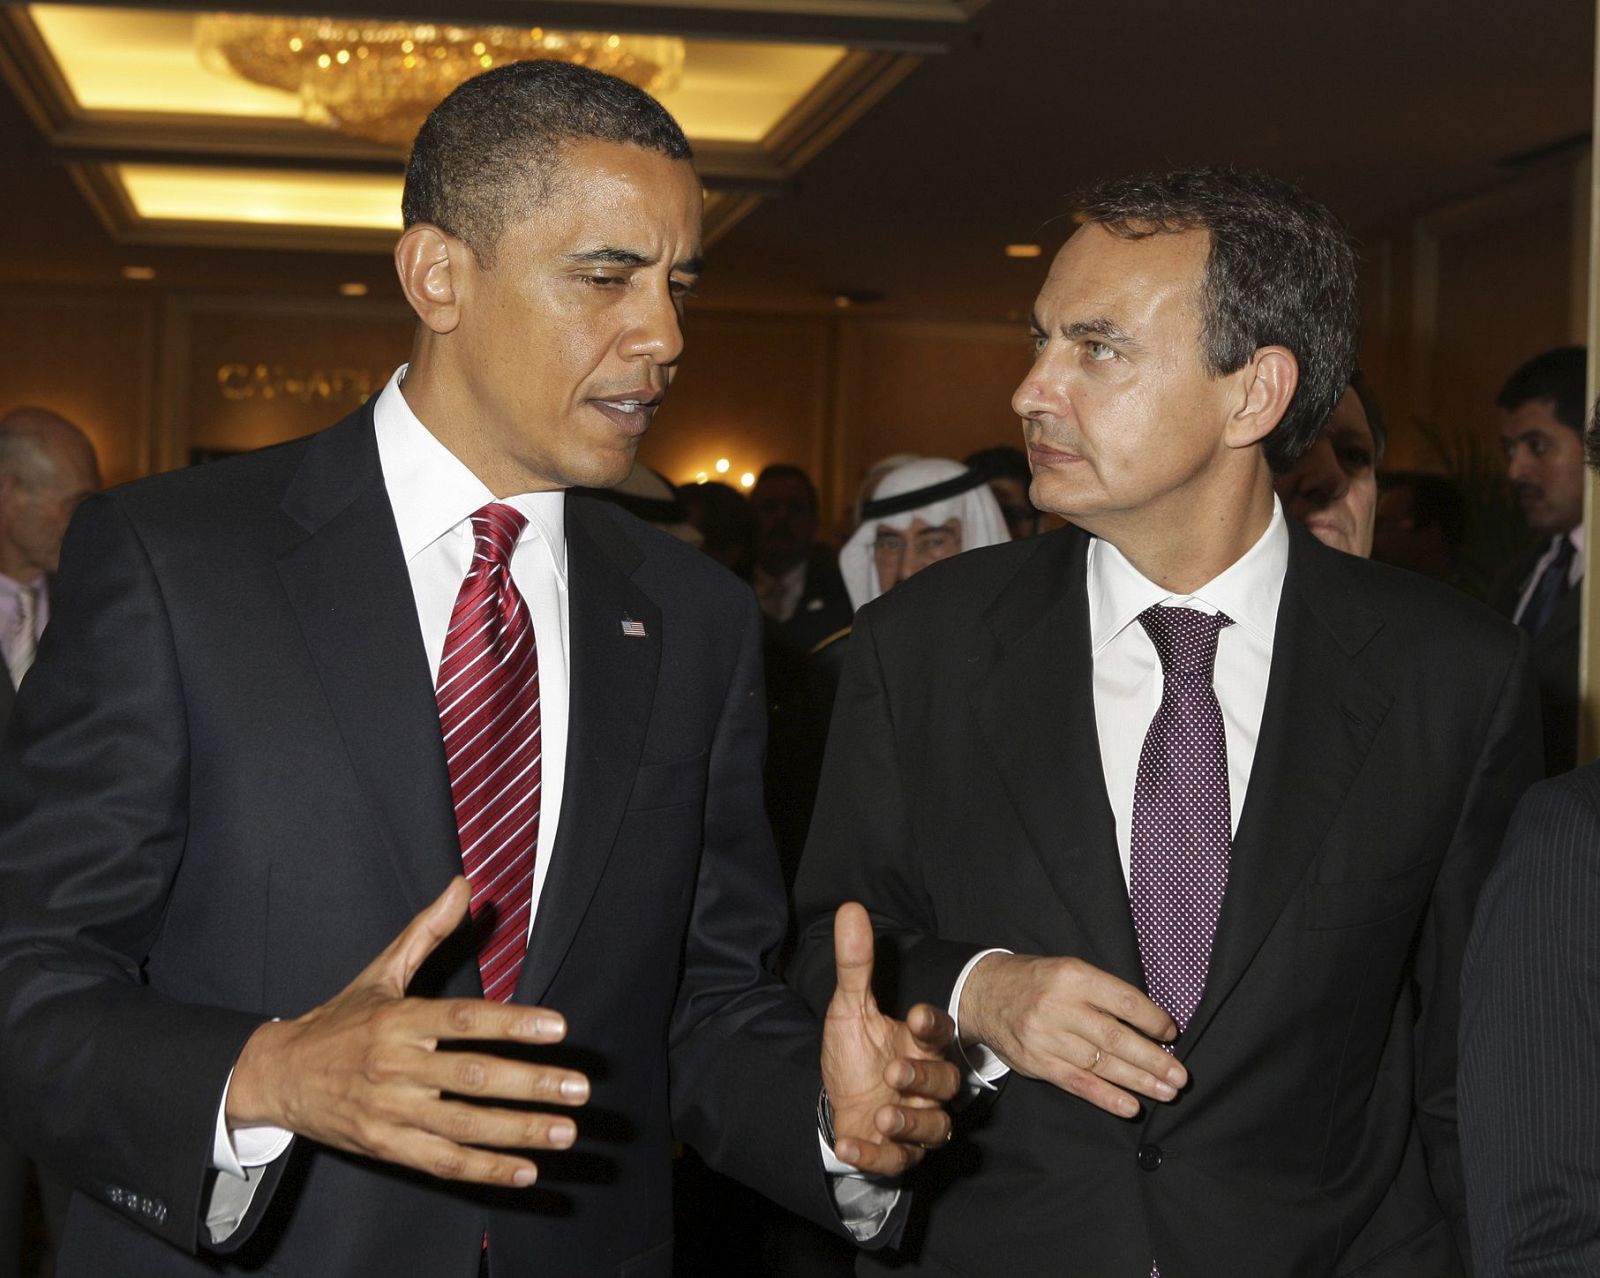 El presidente de Estados Unidos, Barack Obama charla con el presidente del Gobierno español, José Luis Rodríguez Zapatero, a su llegada a la recepcion de los jefes de Estado y de Gobierno en la Cumbre del G20.